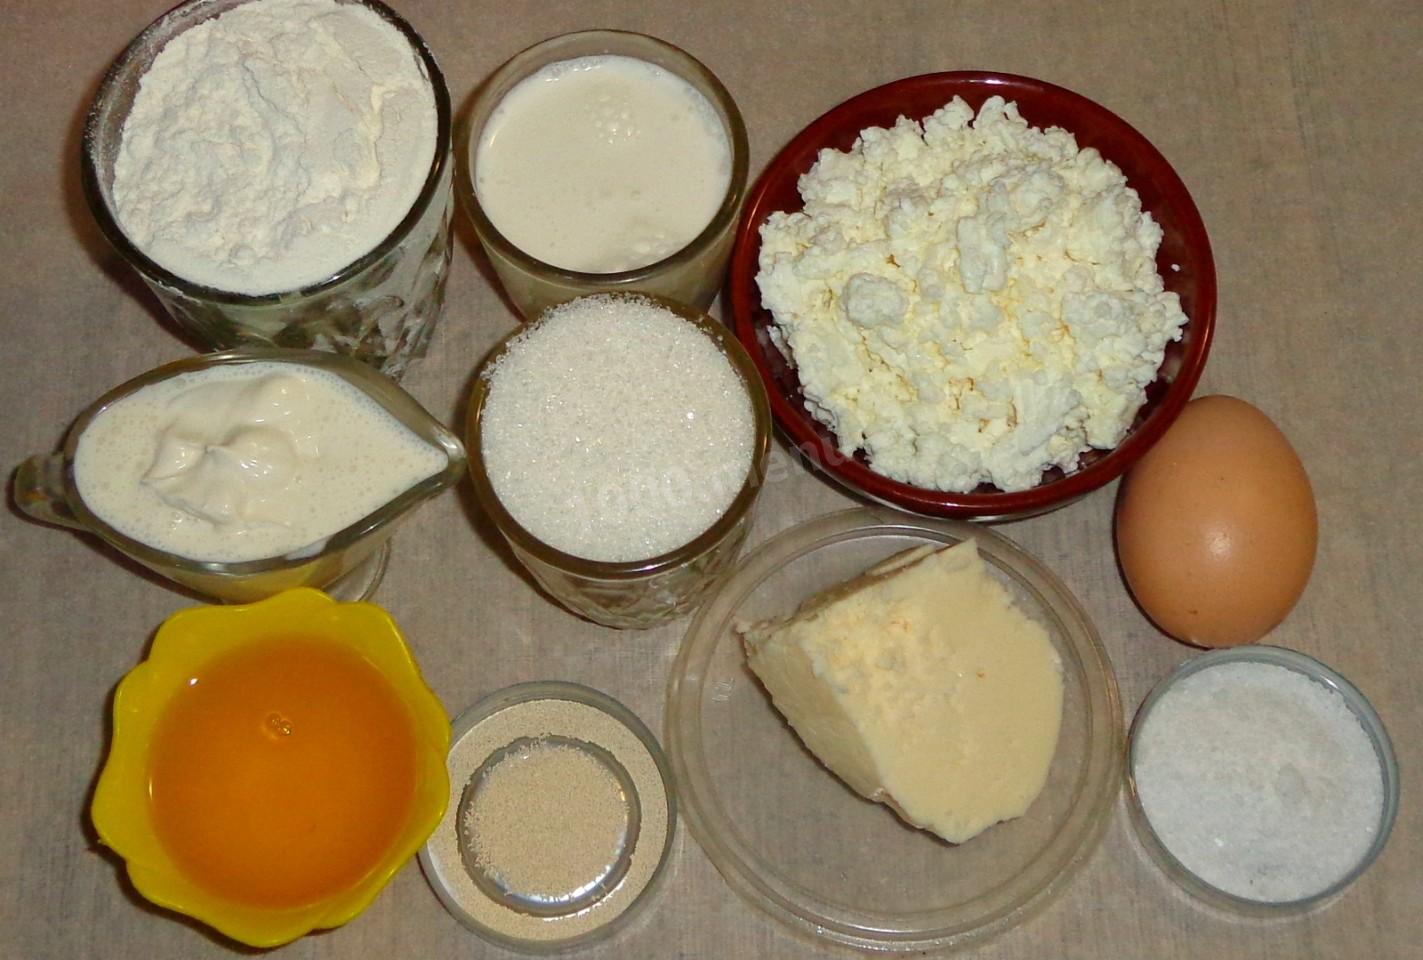 Сливочное масло кефир яйца. Творог со сметаной. Мука яйца сахар. Сметана яйца мука сахар. Молоко и яйца.